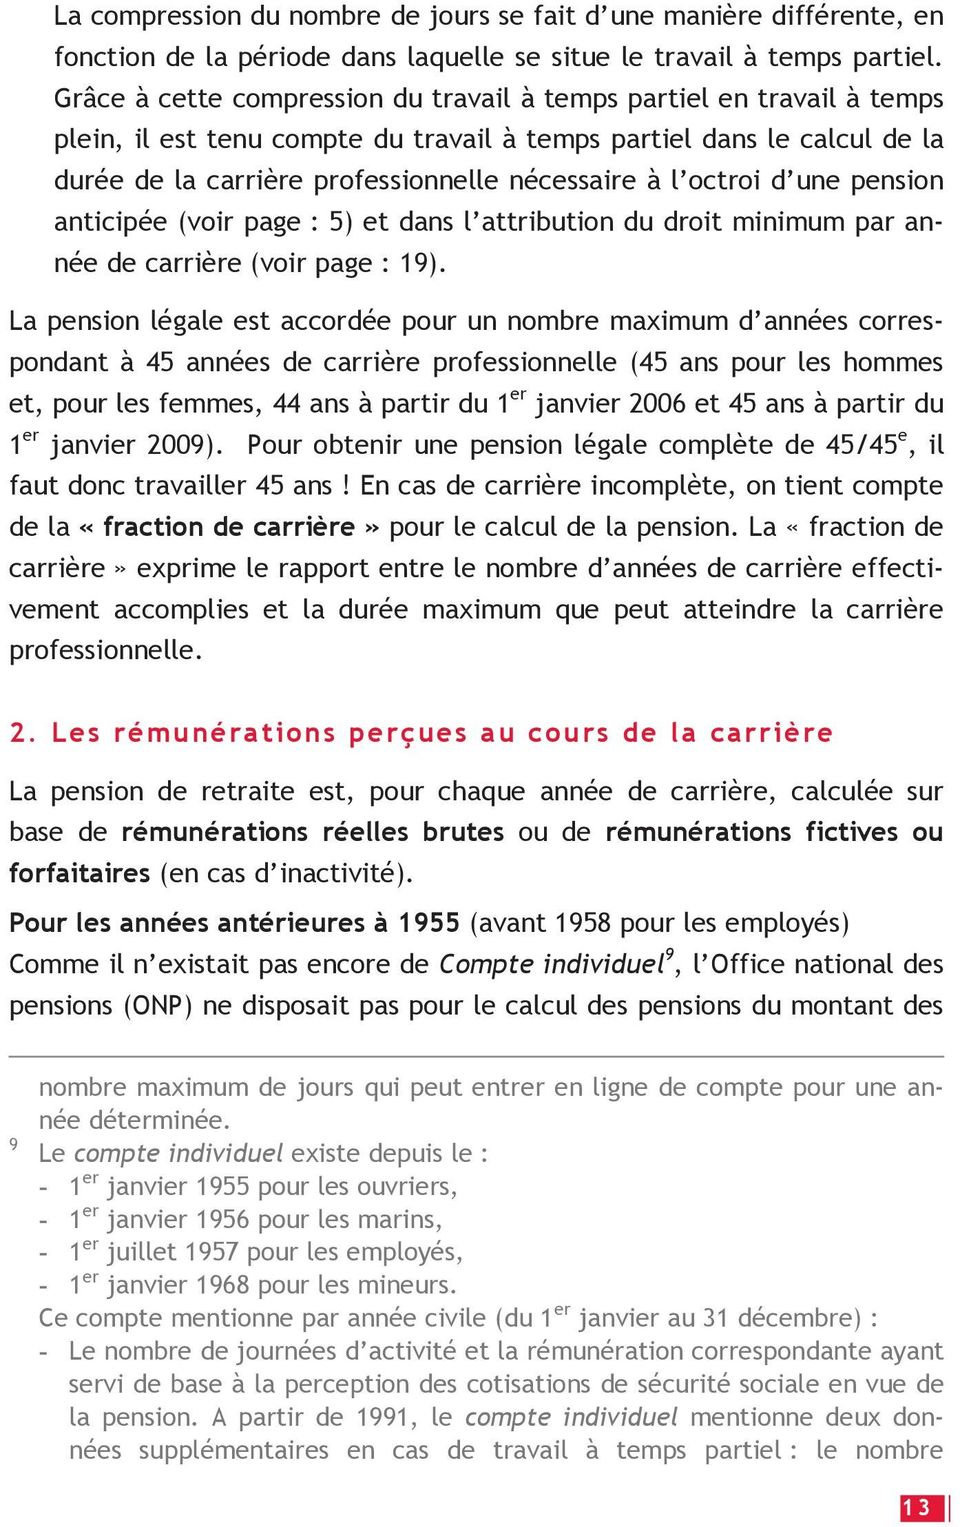 octroi d une pension anticipée (voir page : 5) et dans l attribution du droit minimum par année de carrière (voir page : 19).